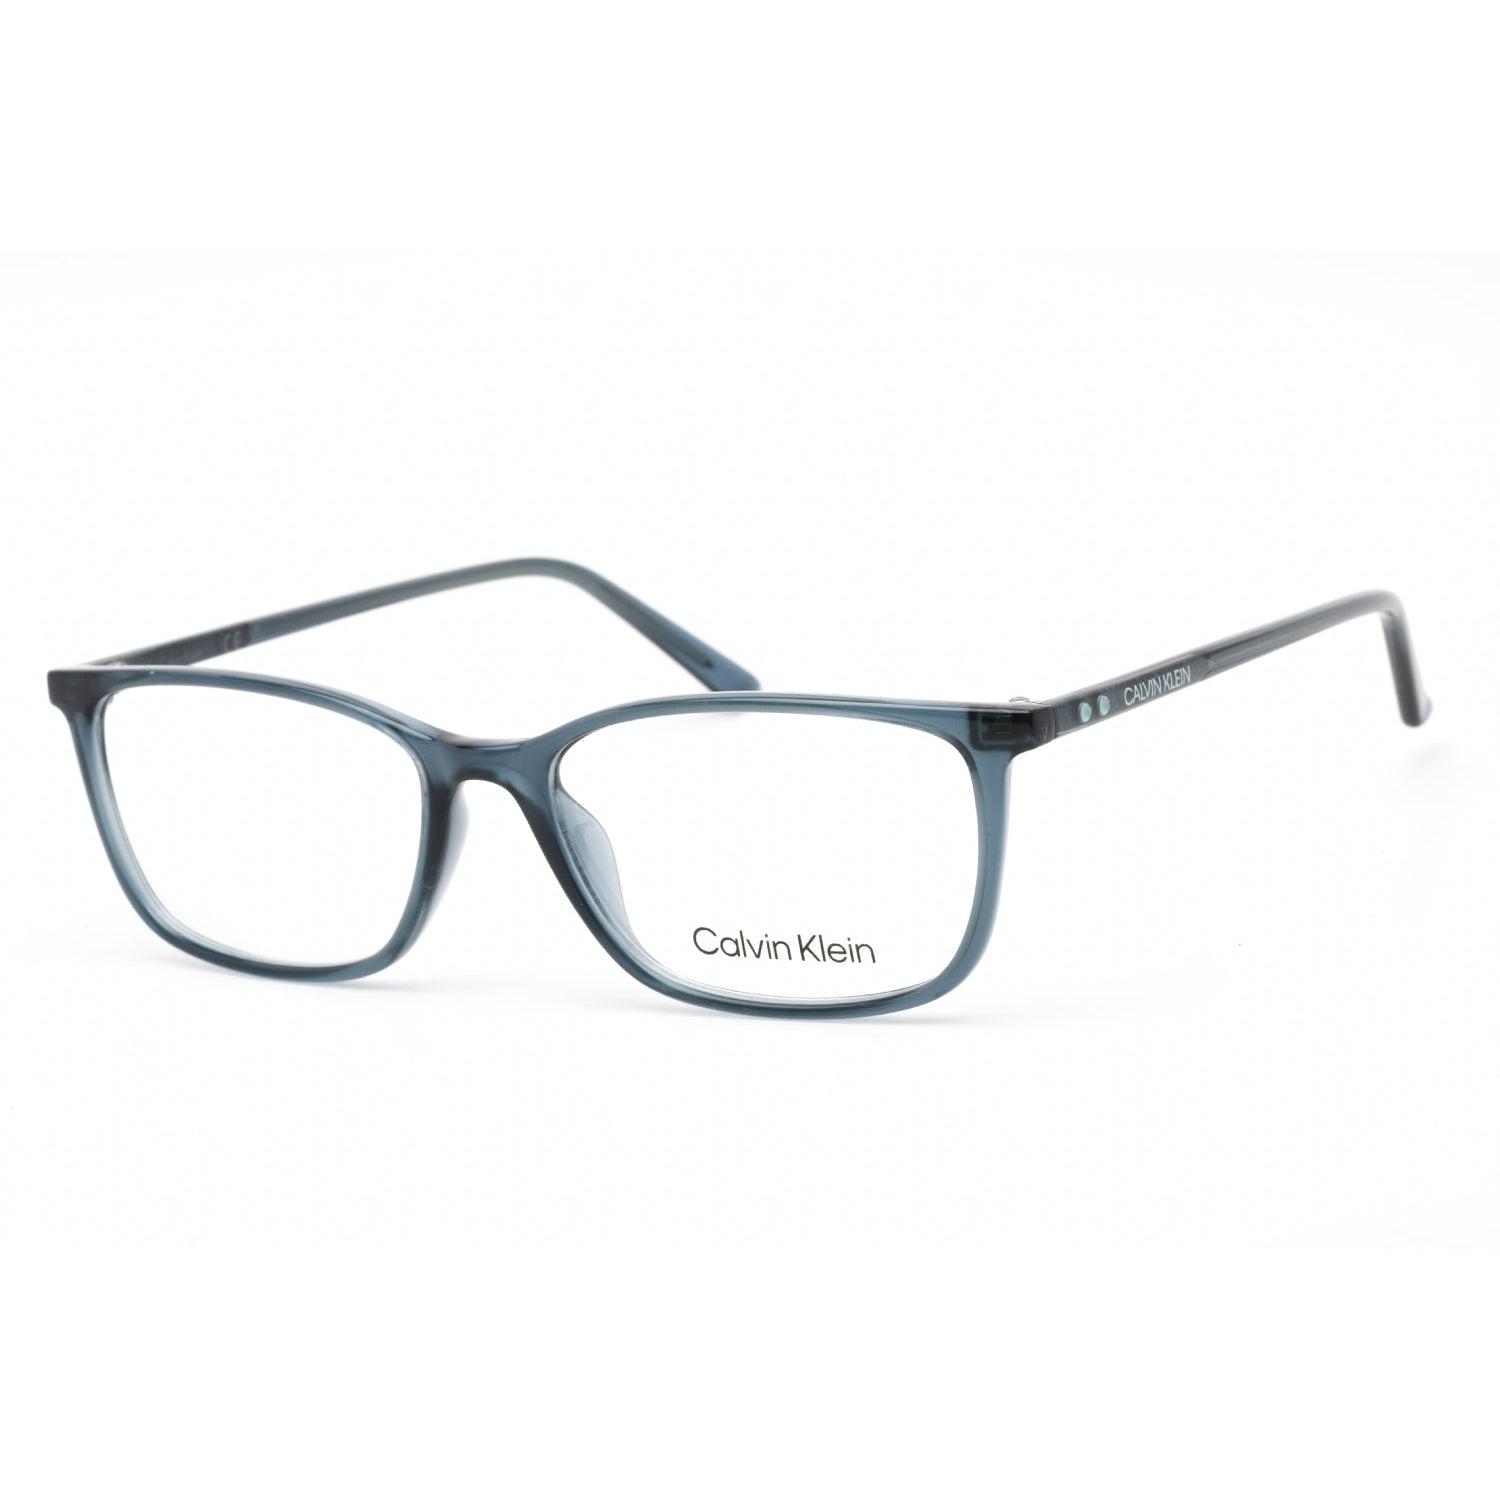 Calvin Klein Ck19512 Eyeglasses Crystal Teal / Clear Demo Lens in ...